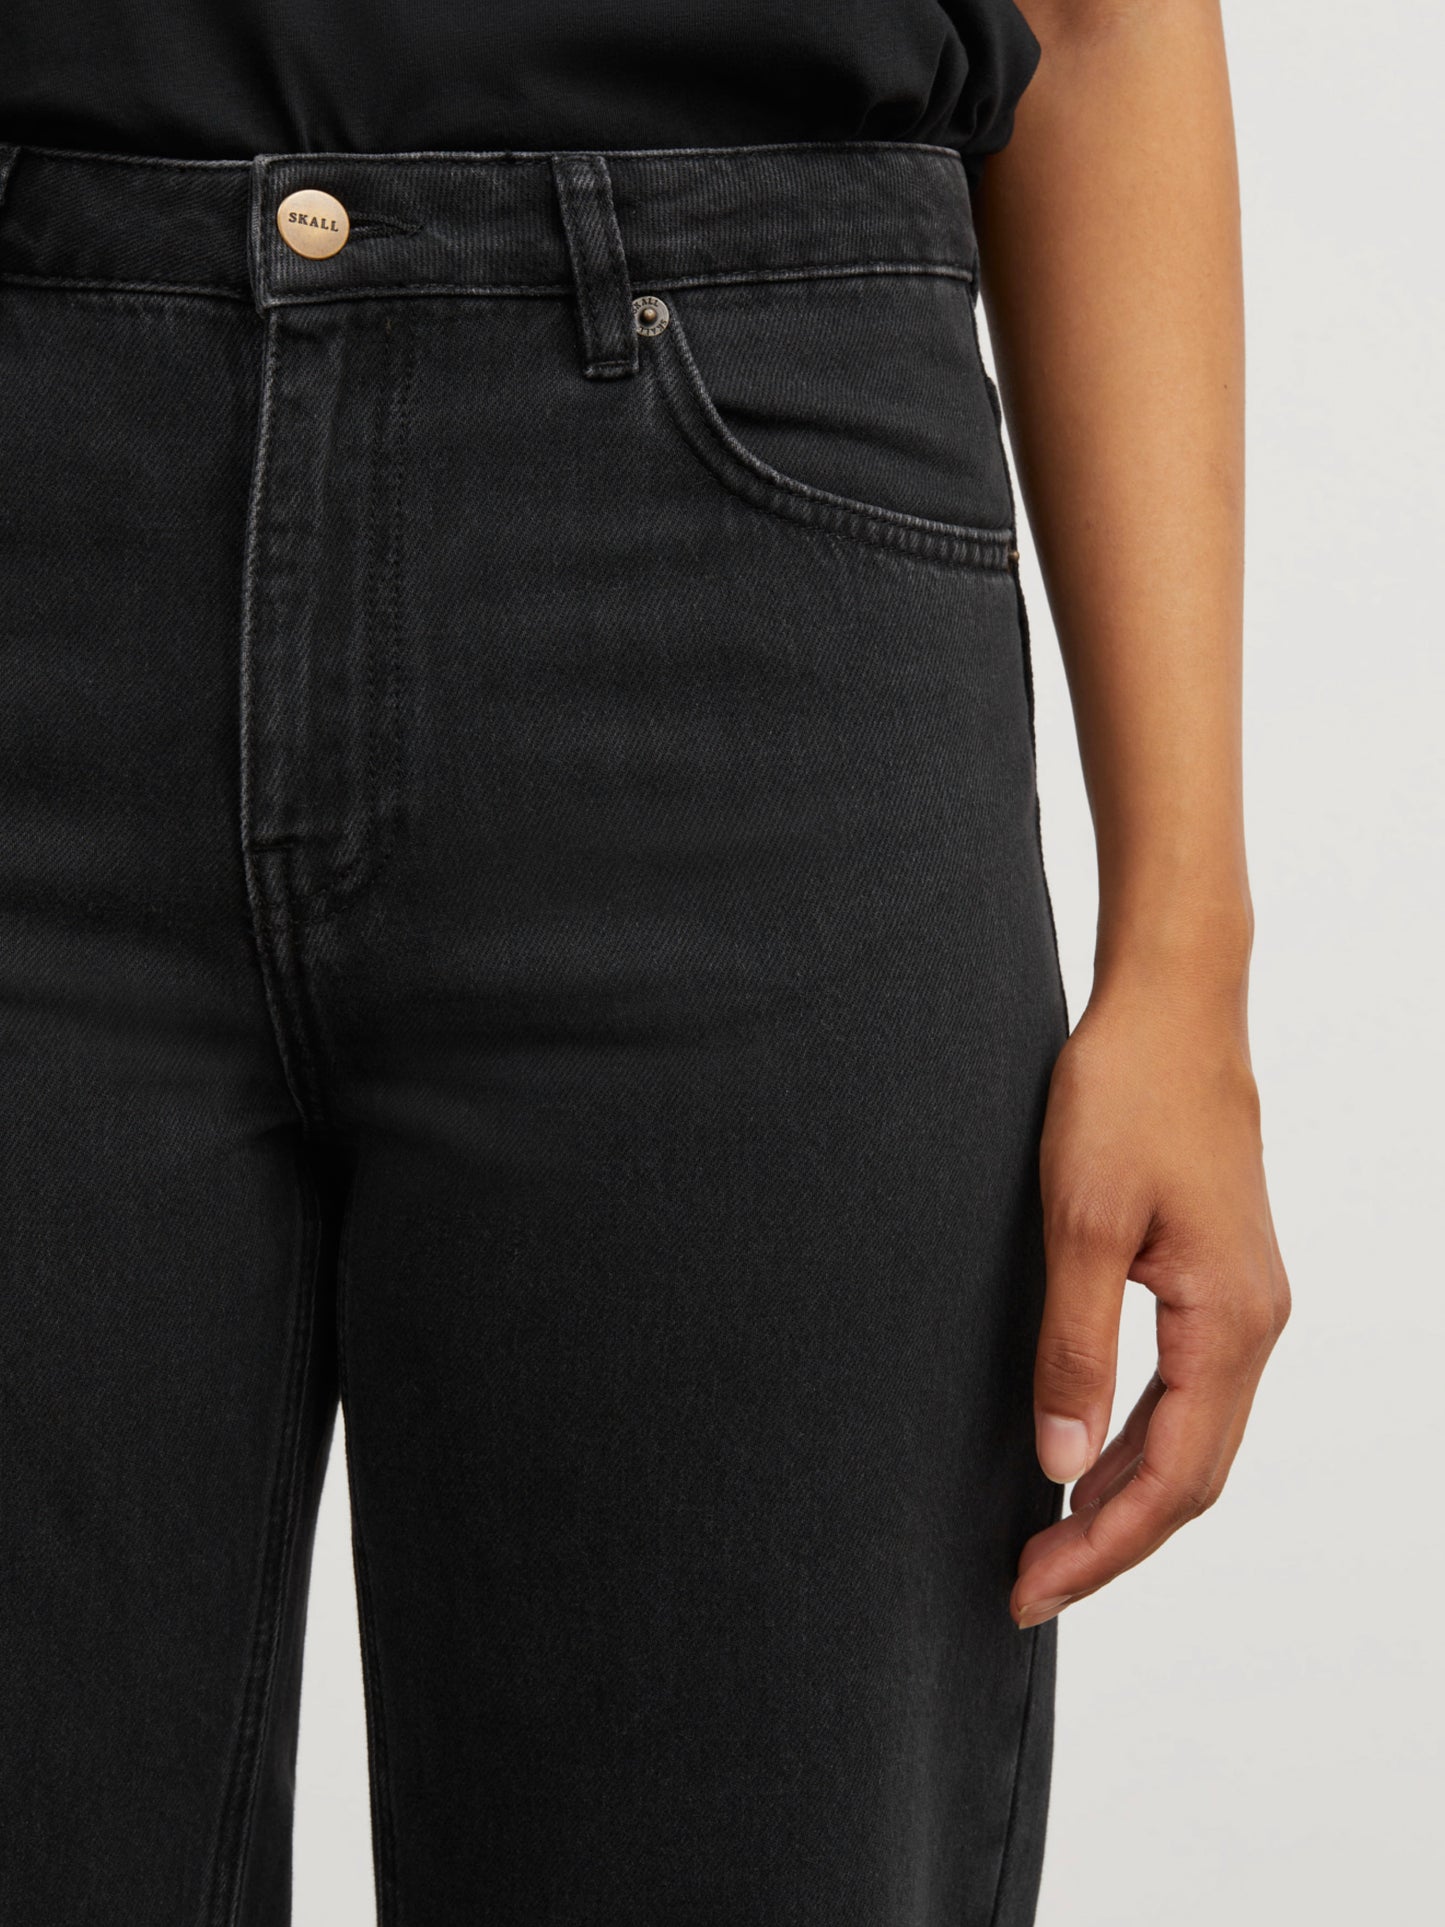 Skall - Allison cropped jeans - Washed black